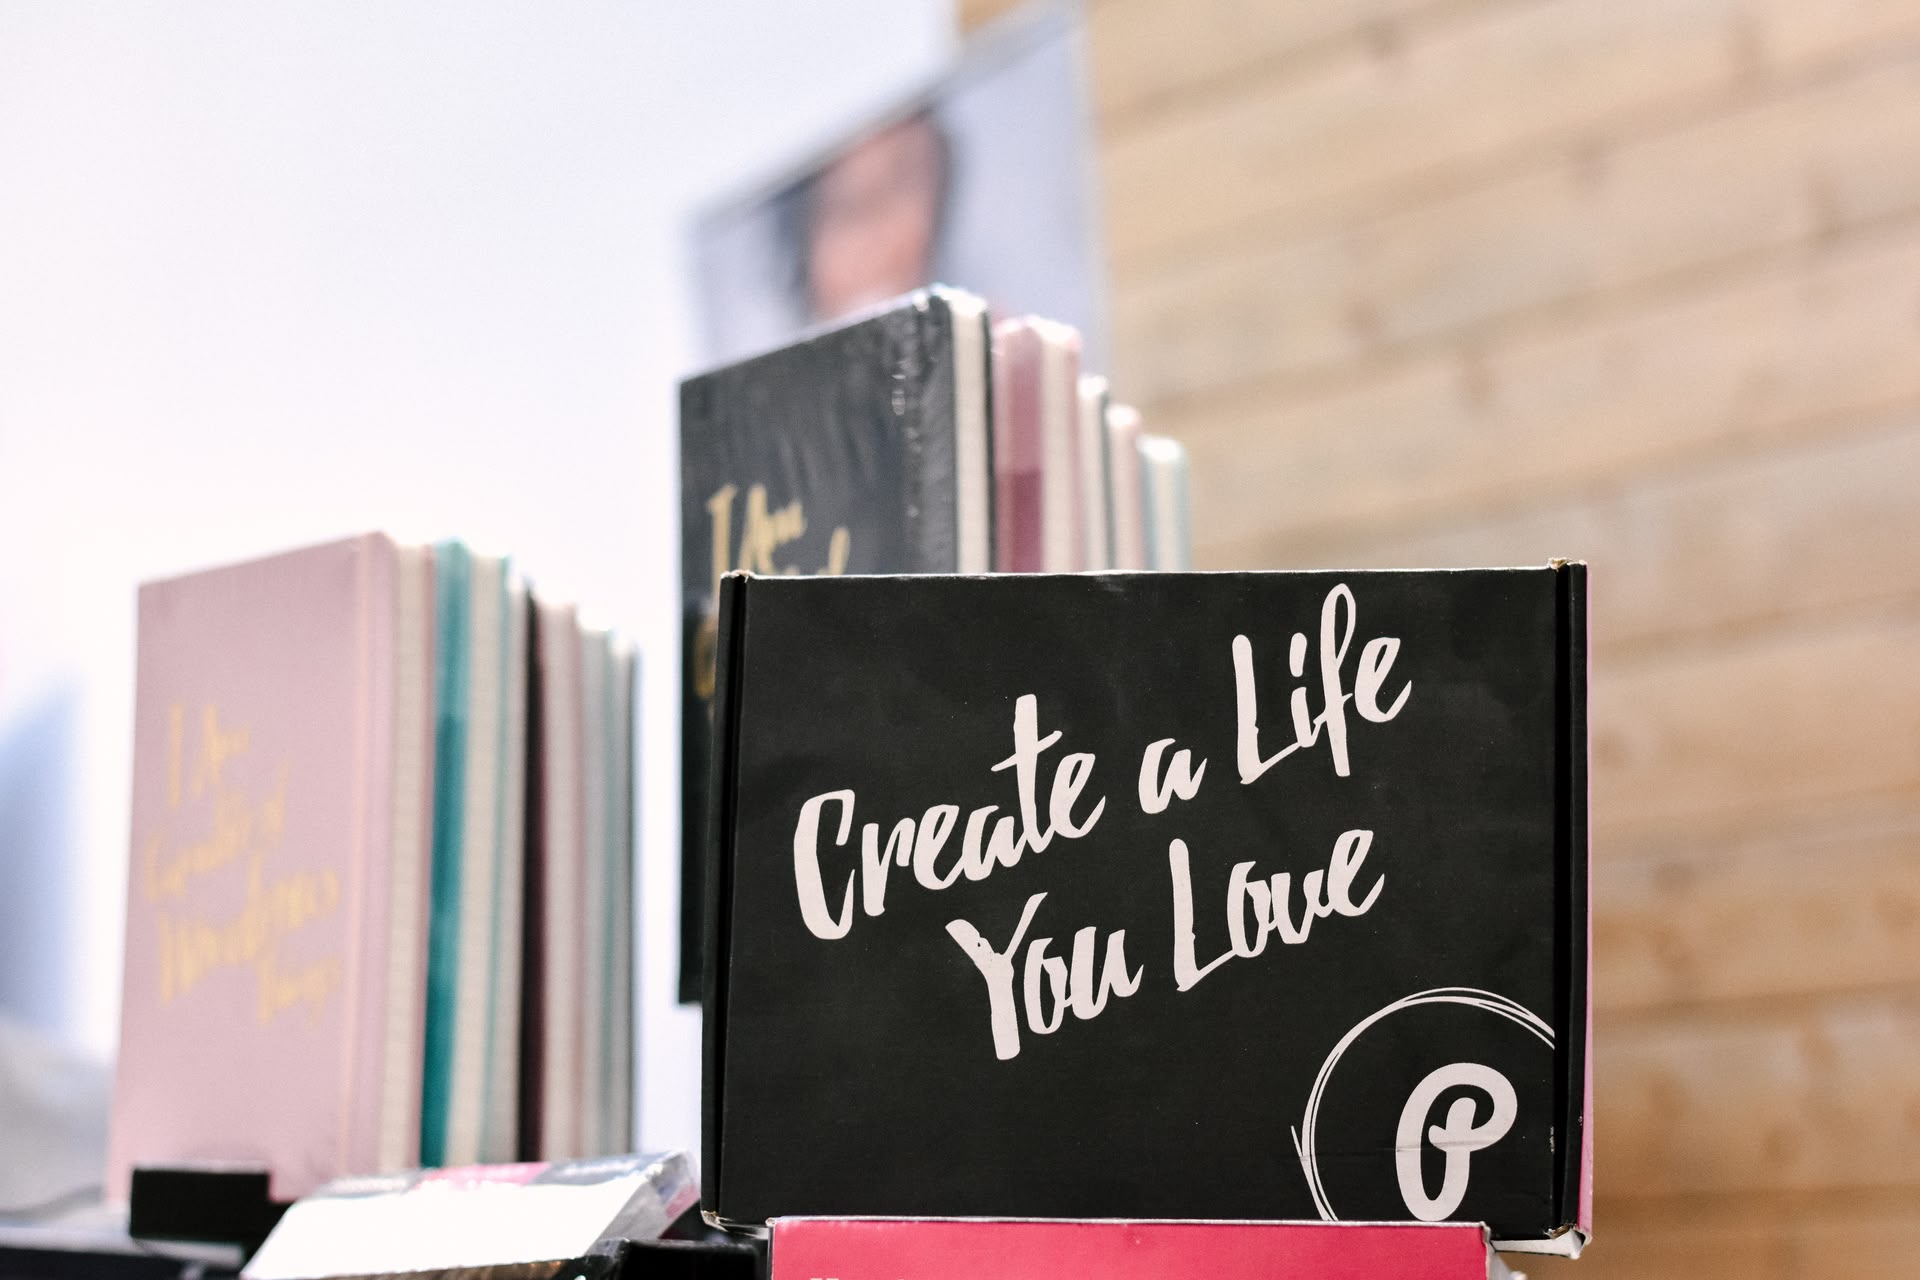 Ein Notizbuch mit der Aufschrift "Create a Life You Love" steht vor anderen Notizbüchern